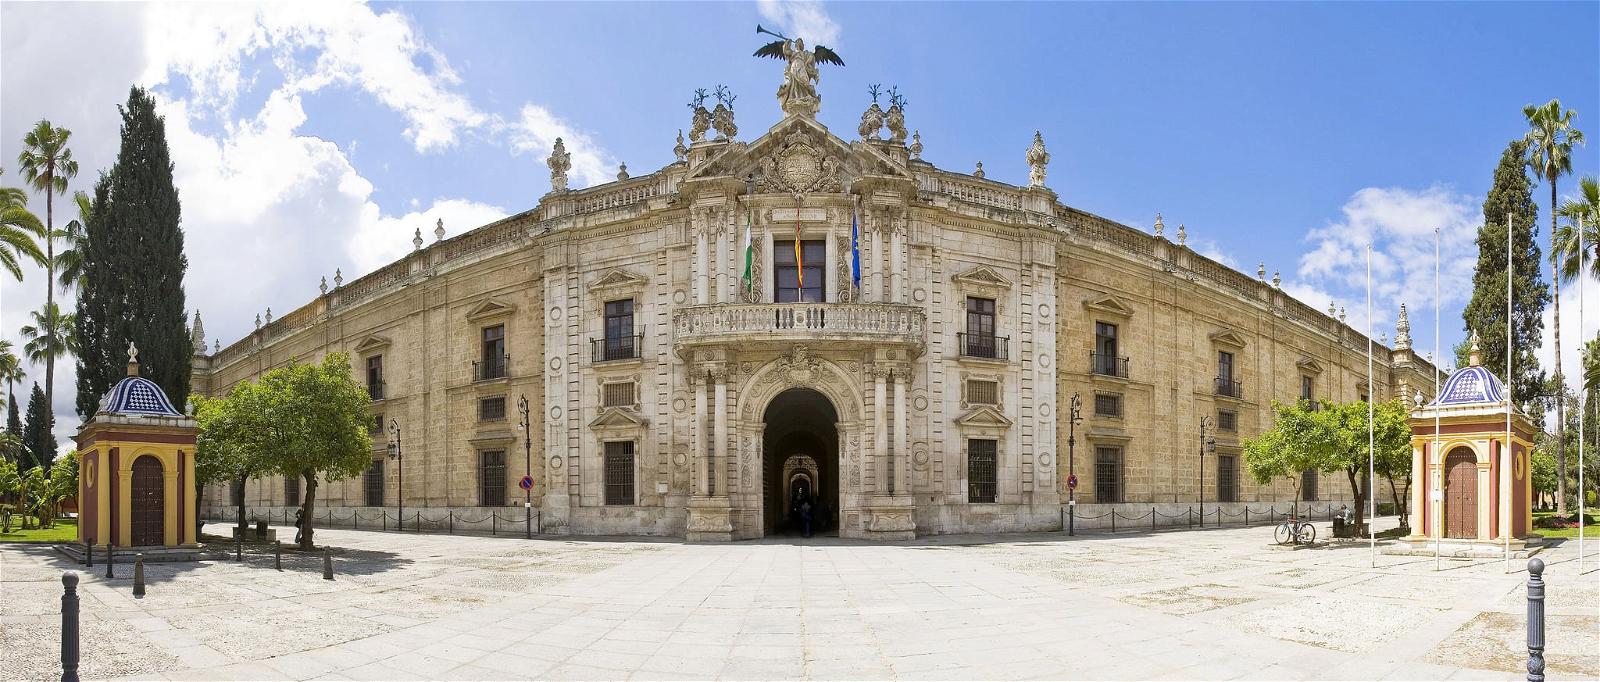 Universidad de Sevilla - Rectorado の画像. de arquitectura urbana fabrica geografia universidaddesevilla sigloxviii tabacos